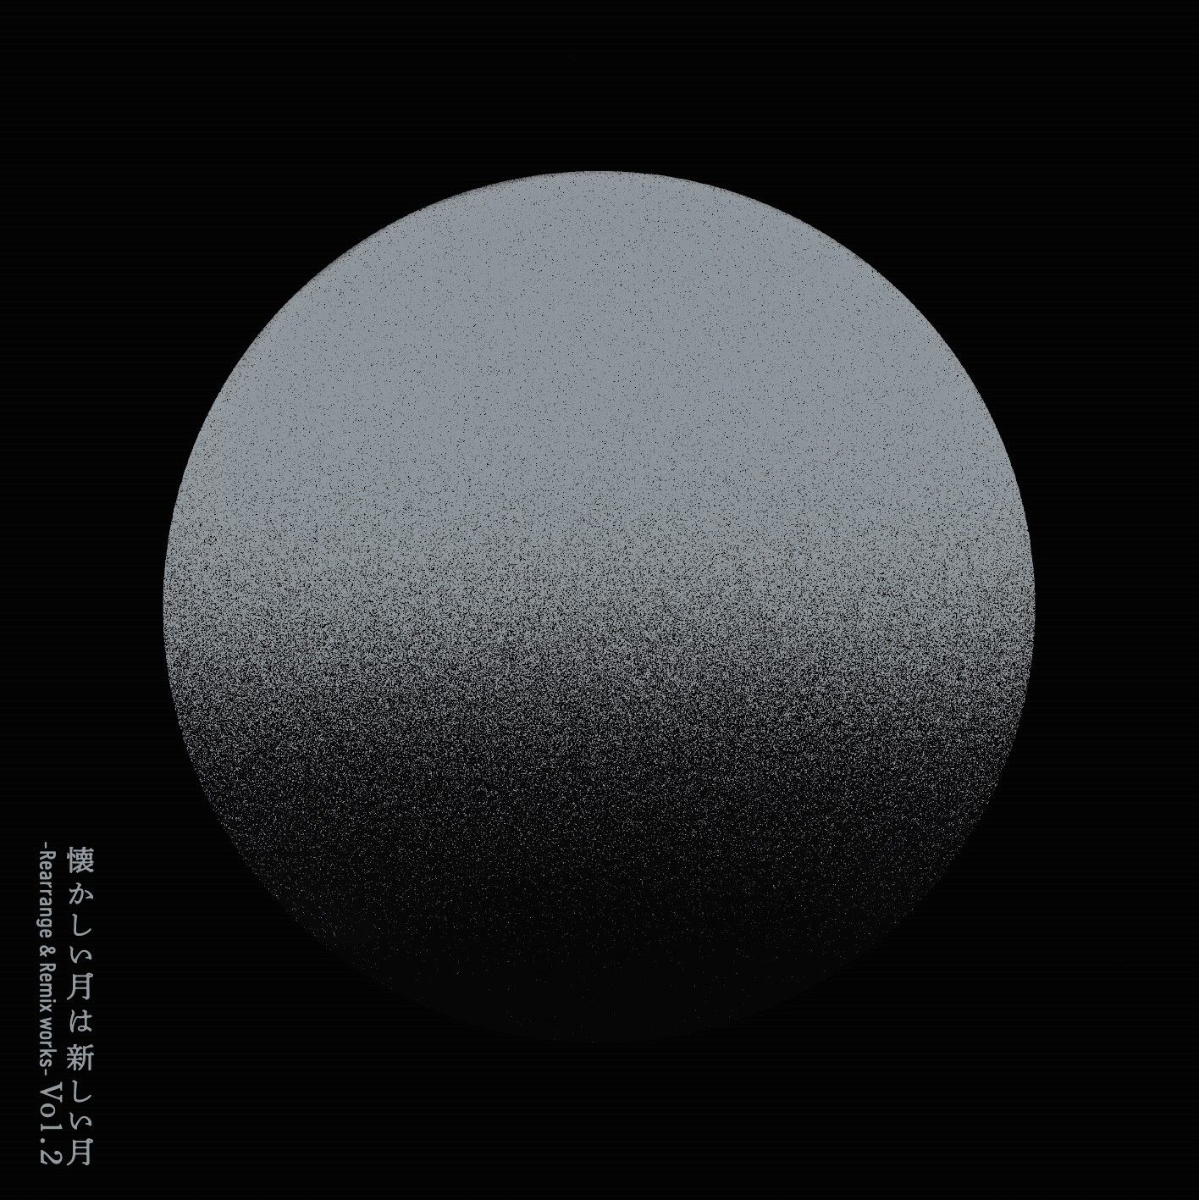 楽天ブックス: 懐かしい月は新しい月 Vol.2 ～Rearrange & Remix works 